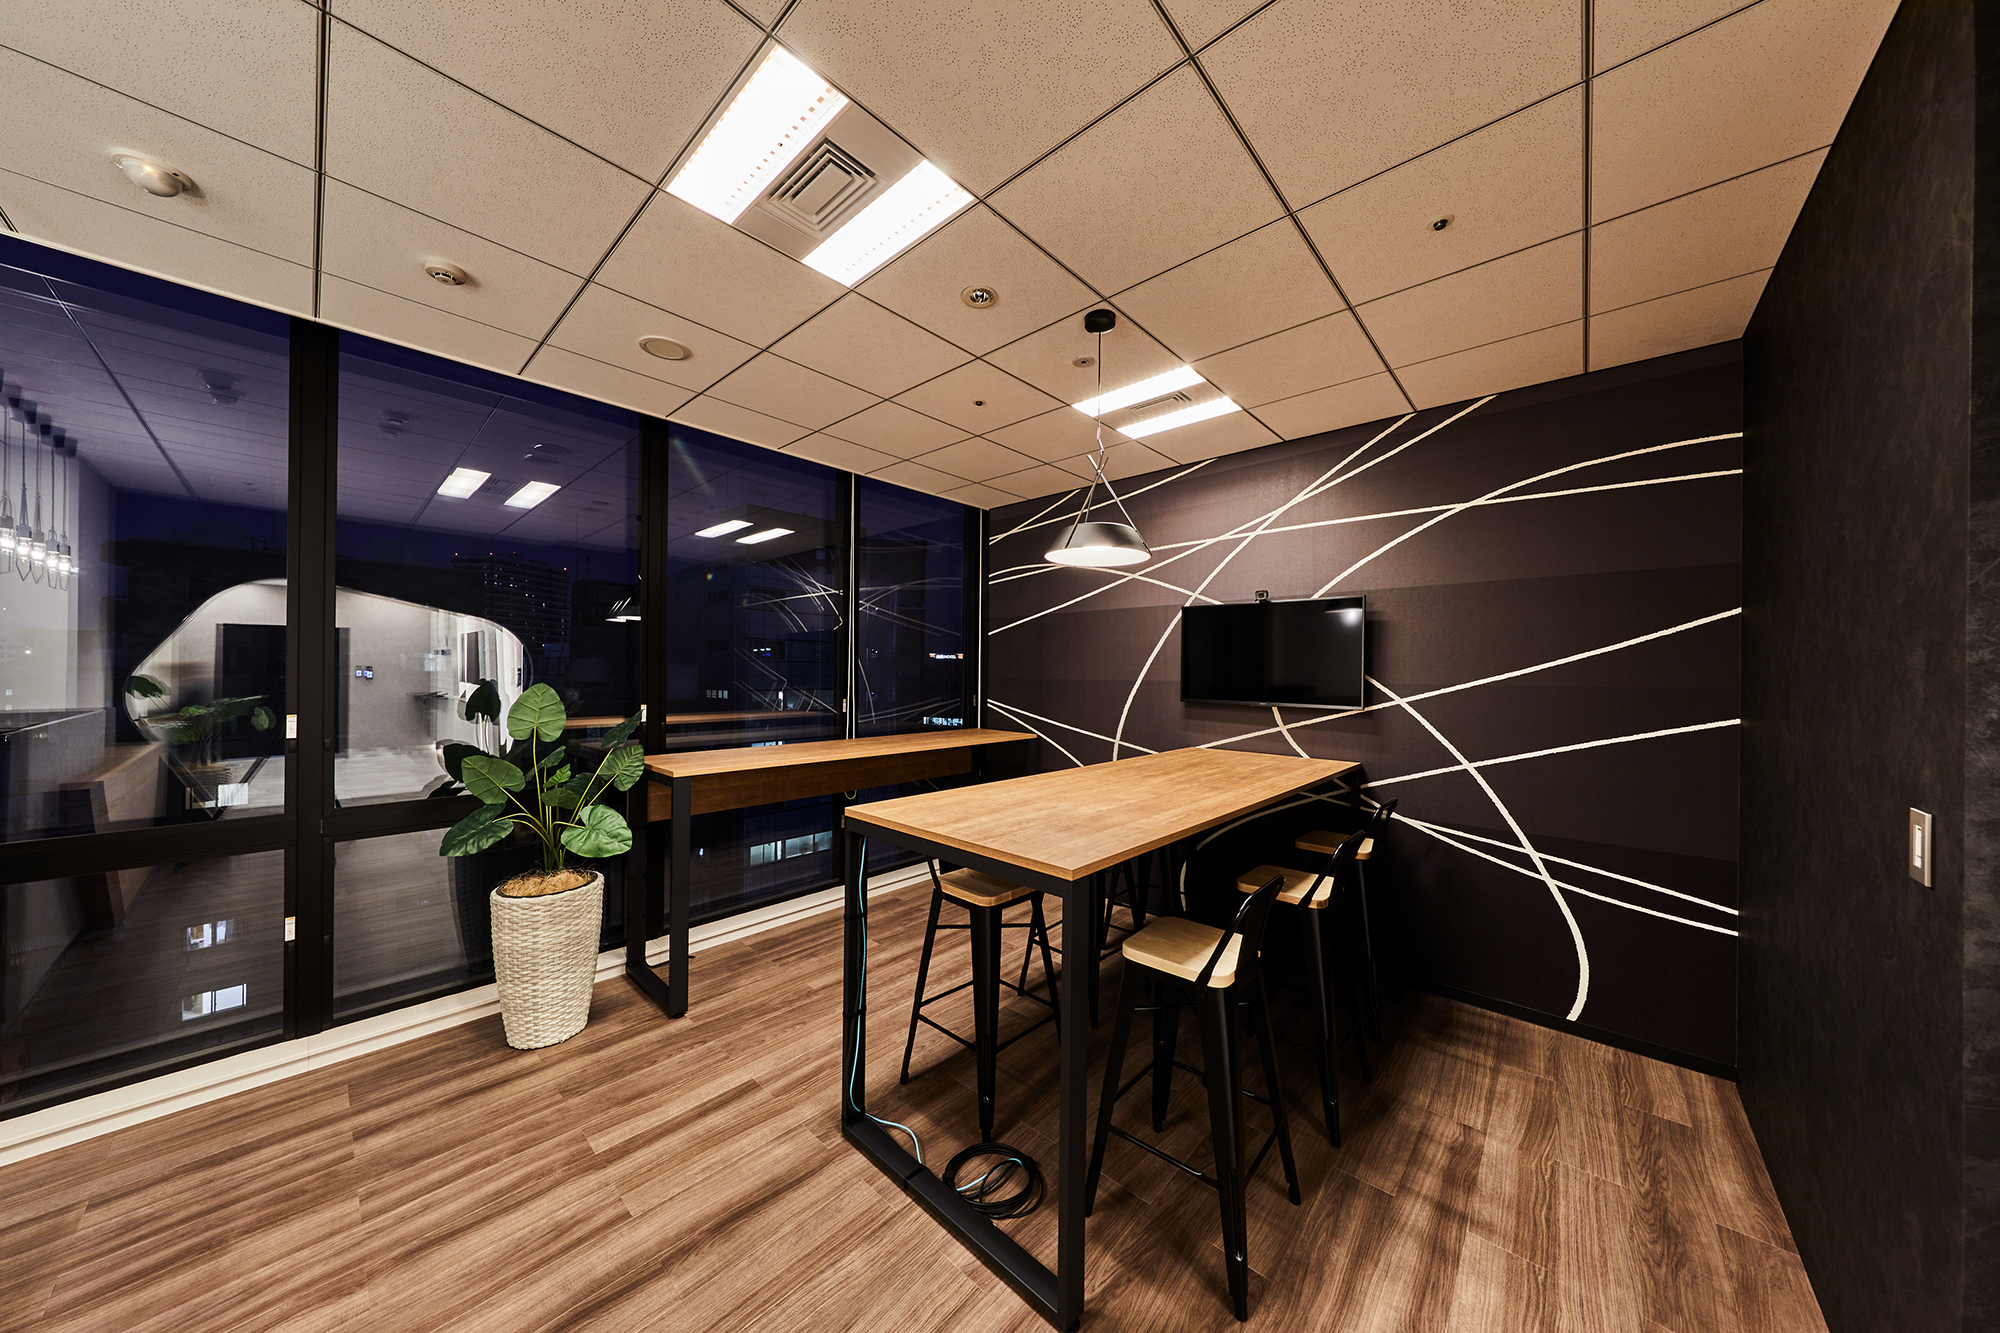 東京都千代田区のオフィス会議室にて、lookシリーズの「Loubre / LKLG020」を、ダークカラーを基調としたシックで洗練された空間へと展開